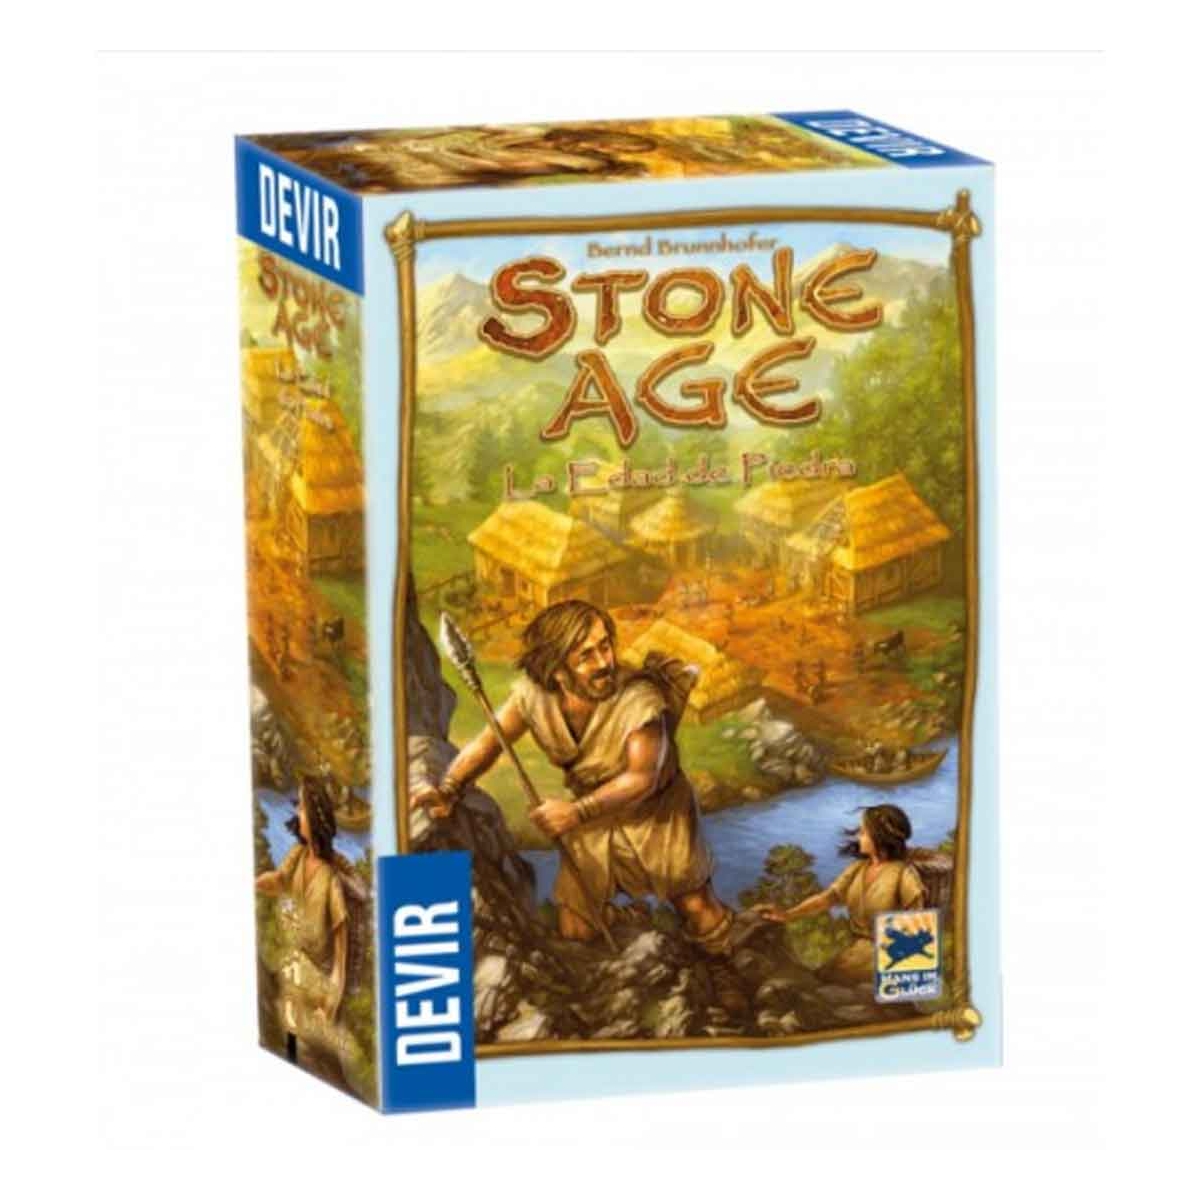 Stone Age La Edad De Piedra